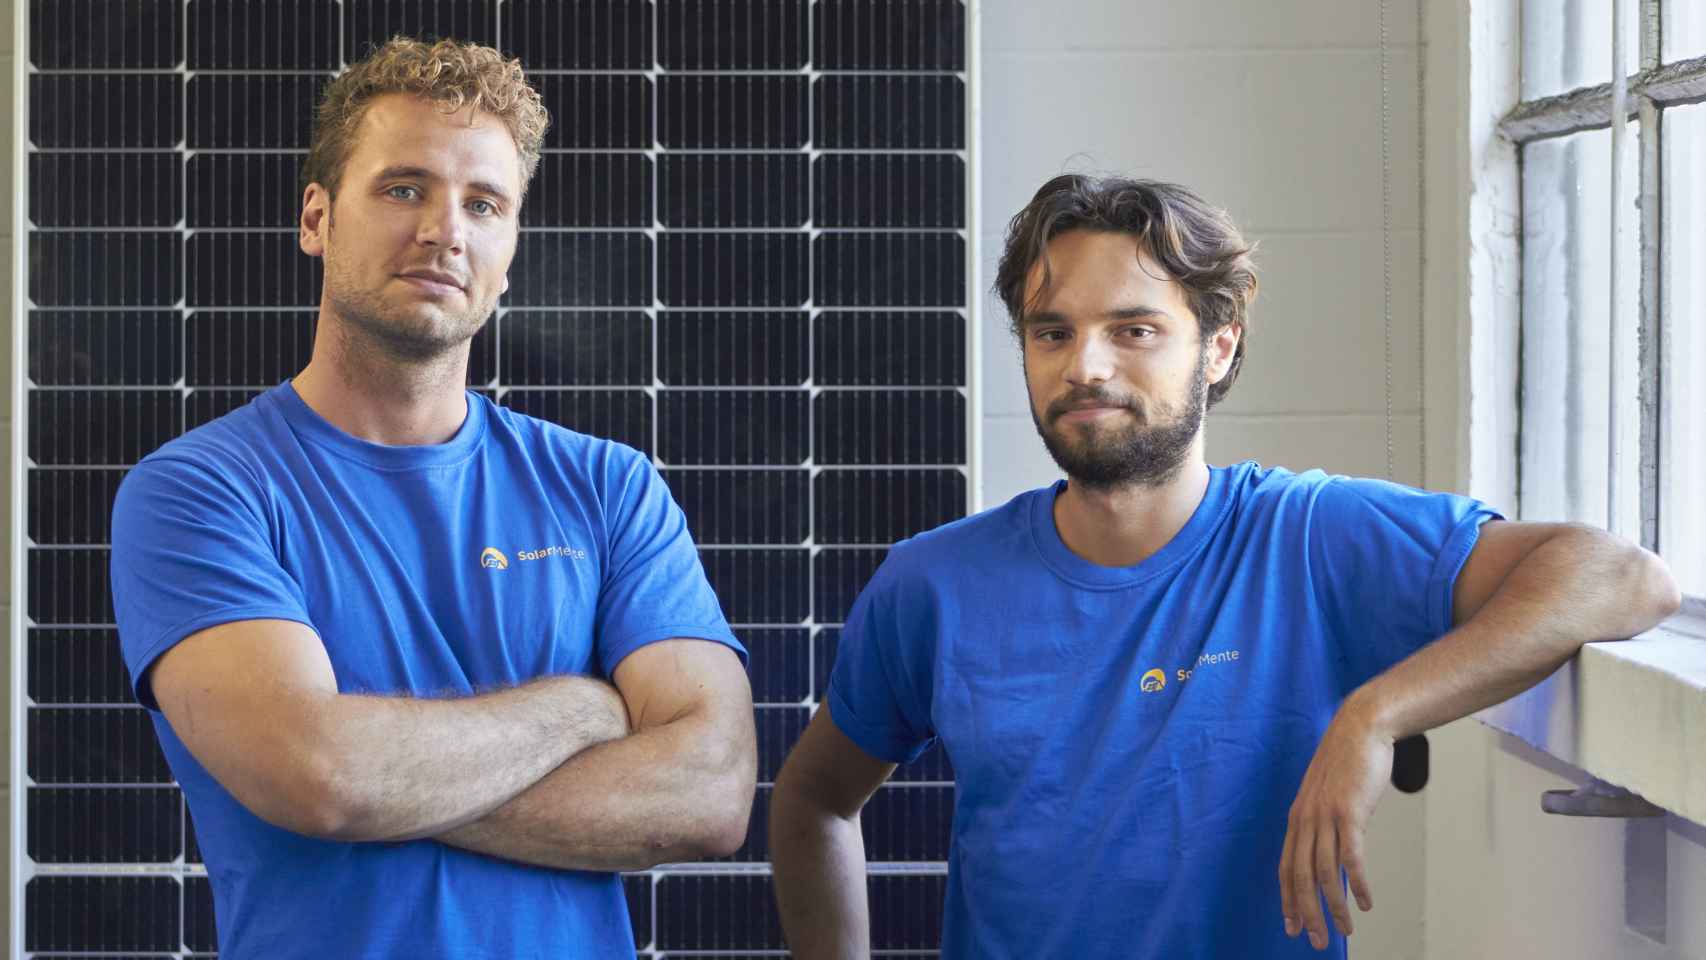 Wouter Draijer y Victor Gardrinier son los cofundadores de SolarMente.